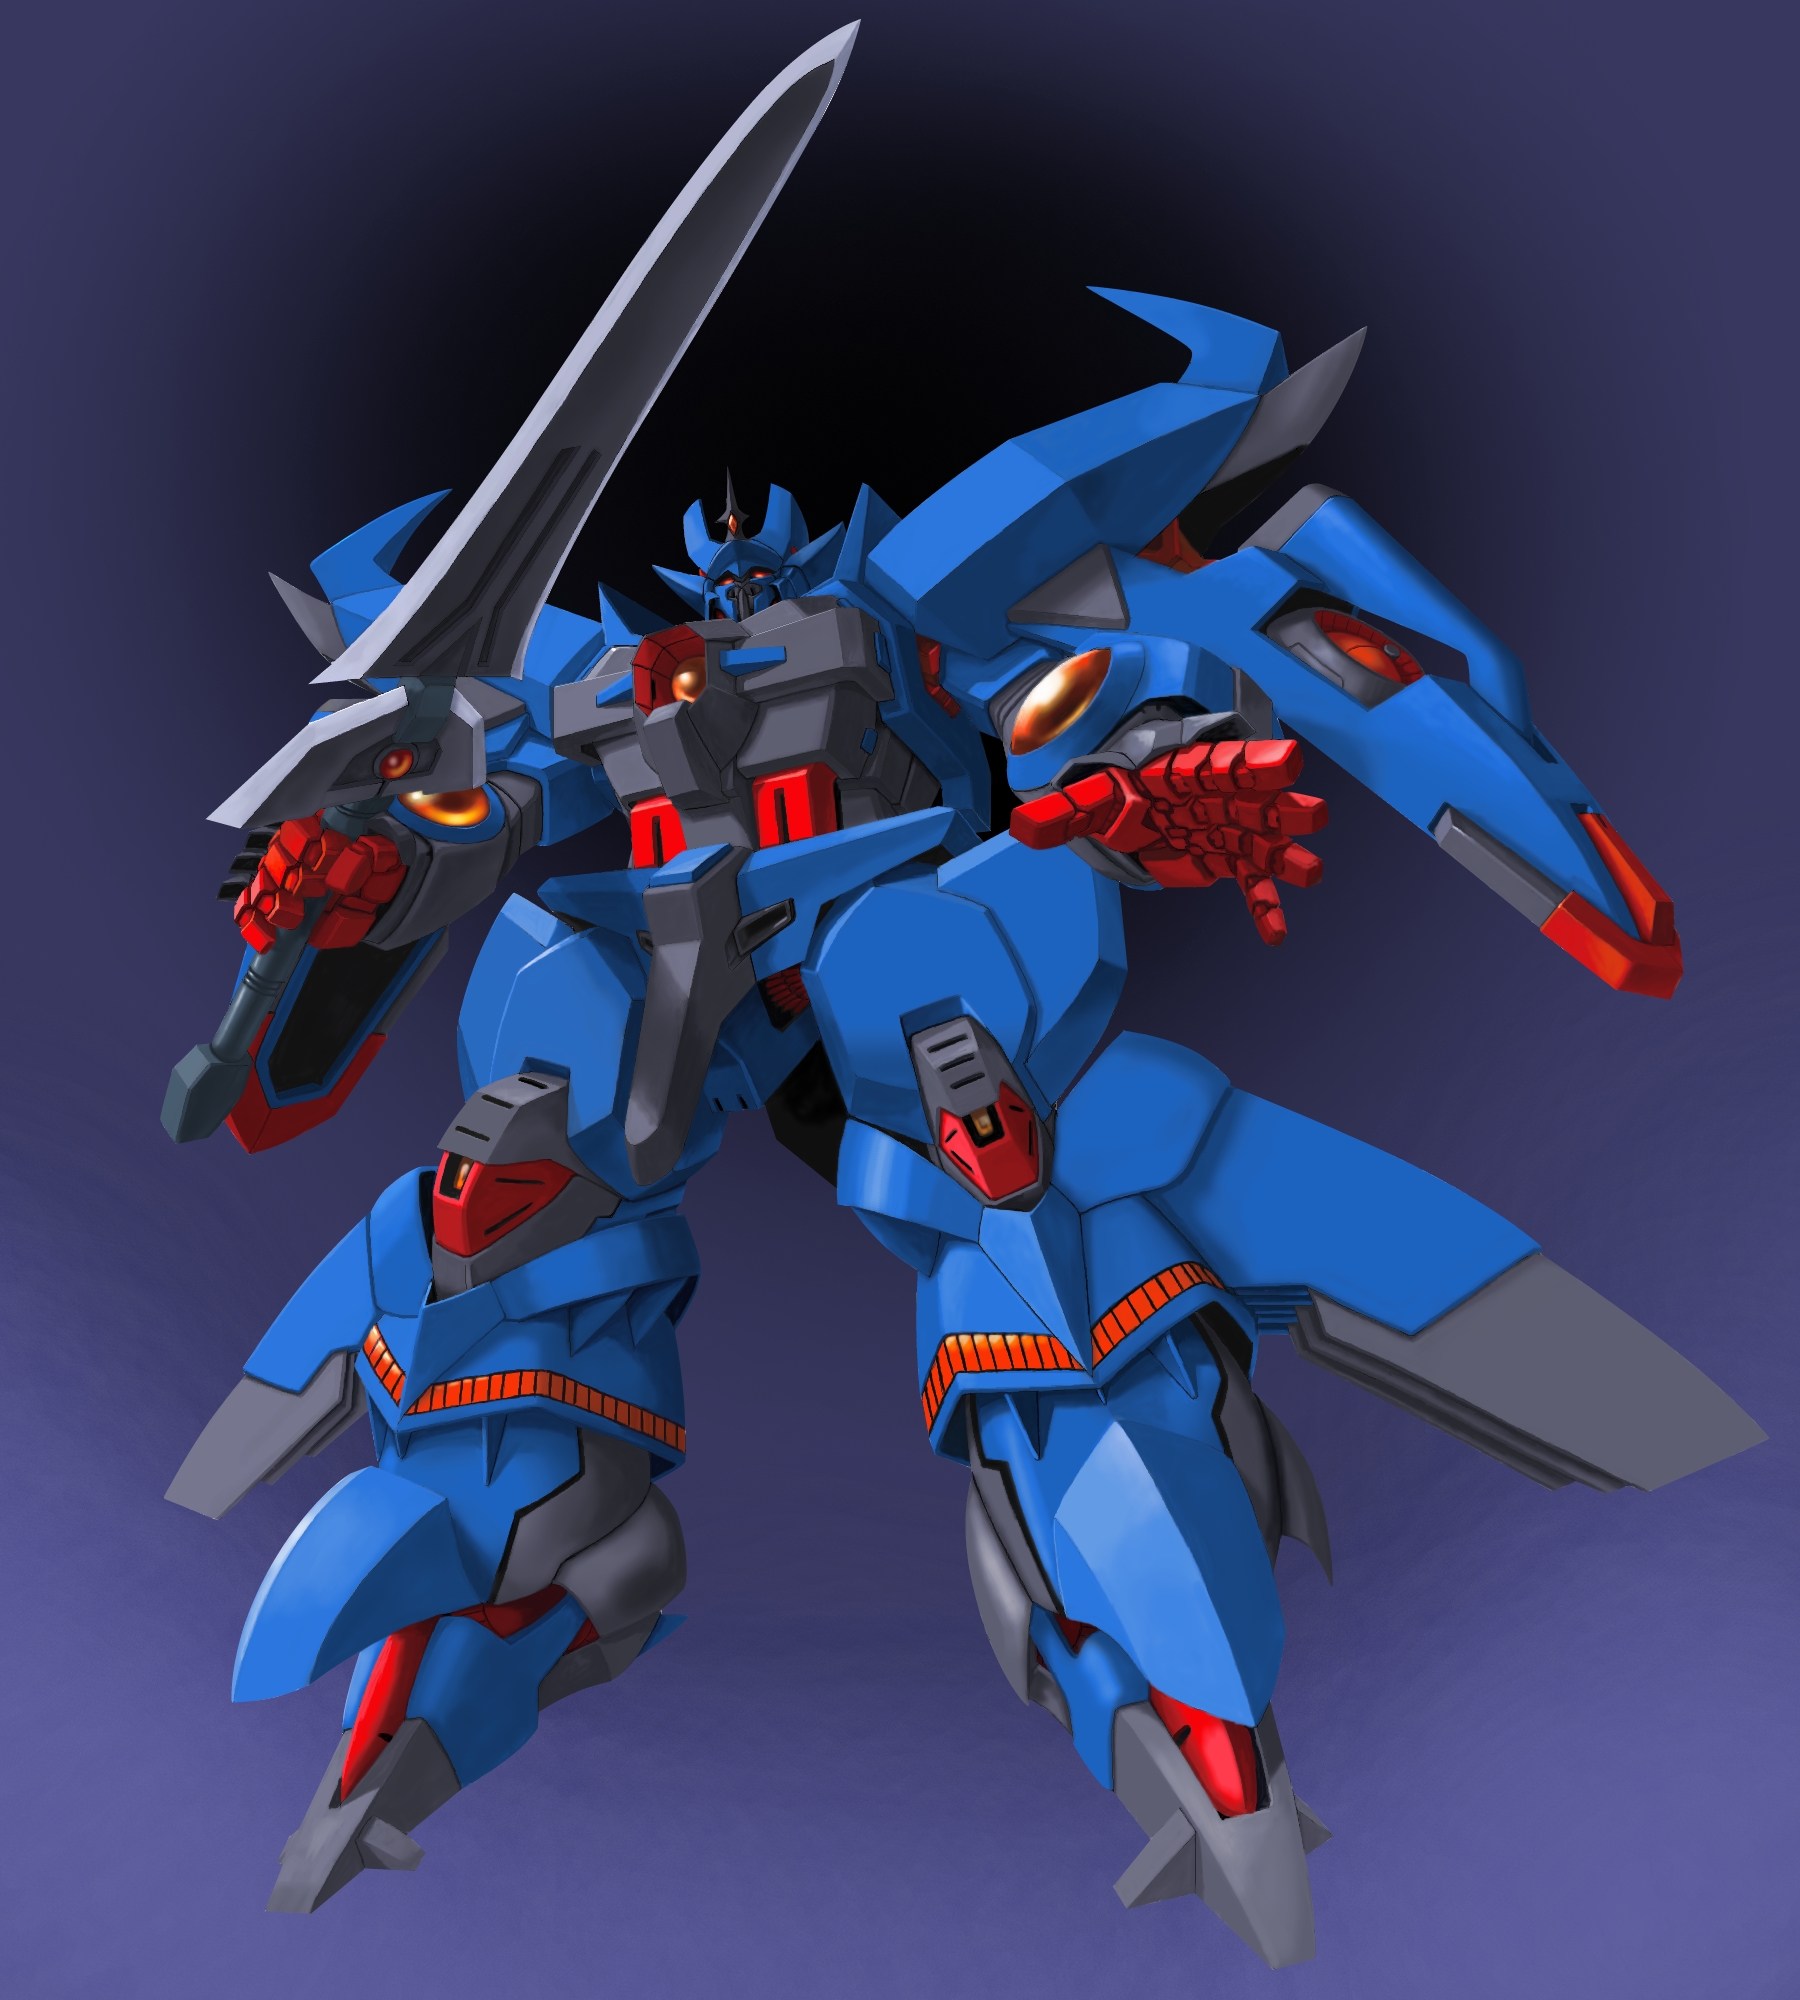 Granzon Anime Mech Super Robot Wars Artwork Digital Art Fan Art 1800x2000